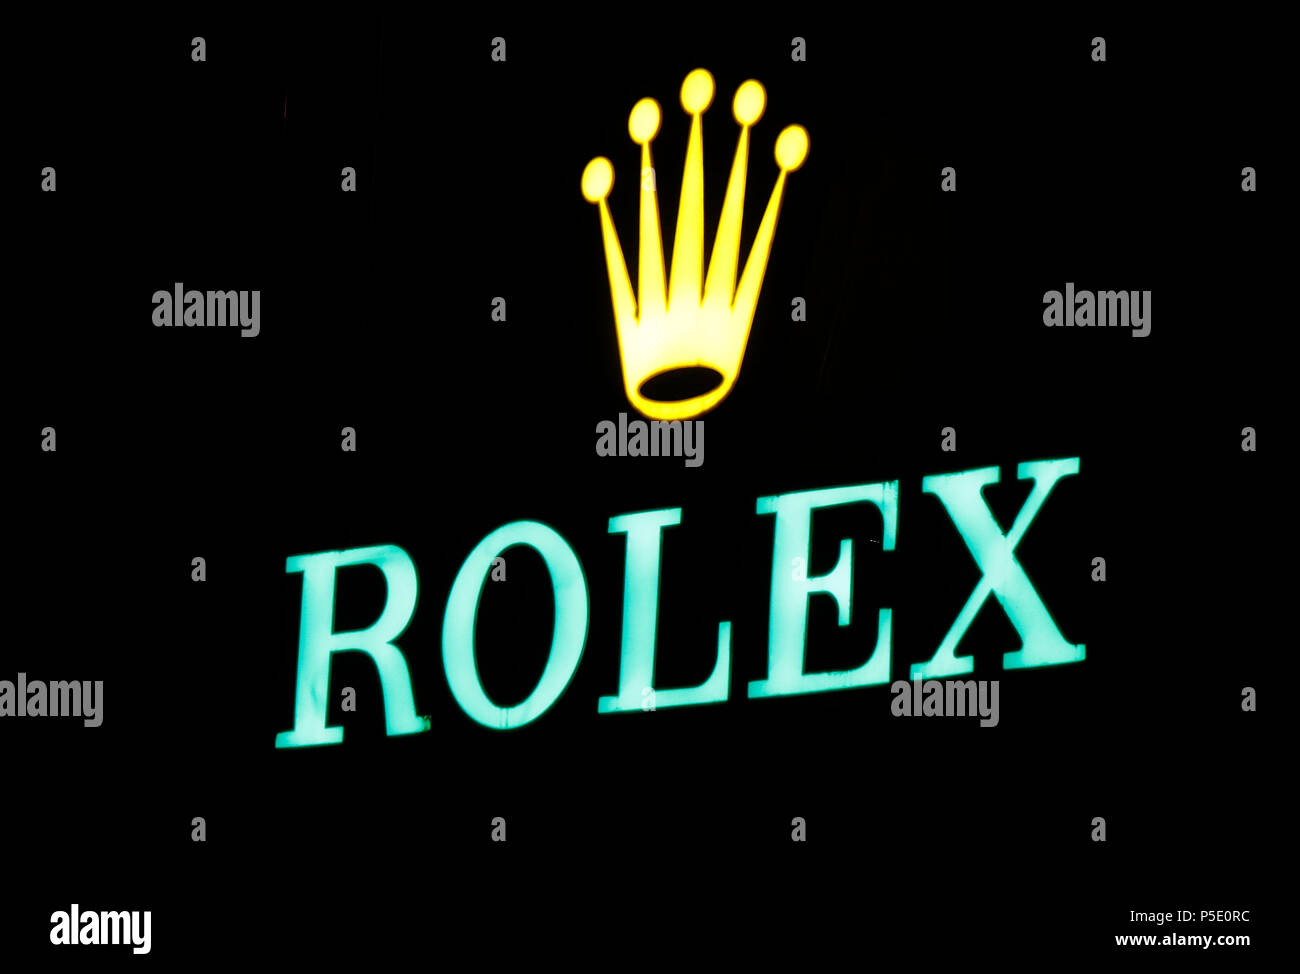 das Logo der Marke "Rolex", Lissabon, Portugal Stock Photo - Alamy